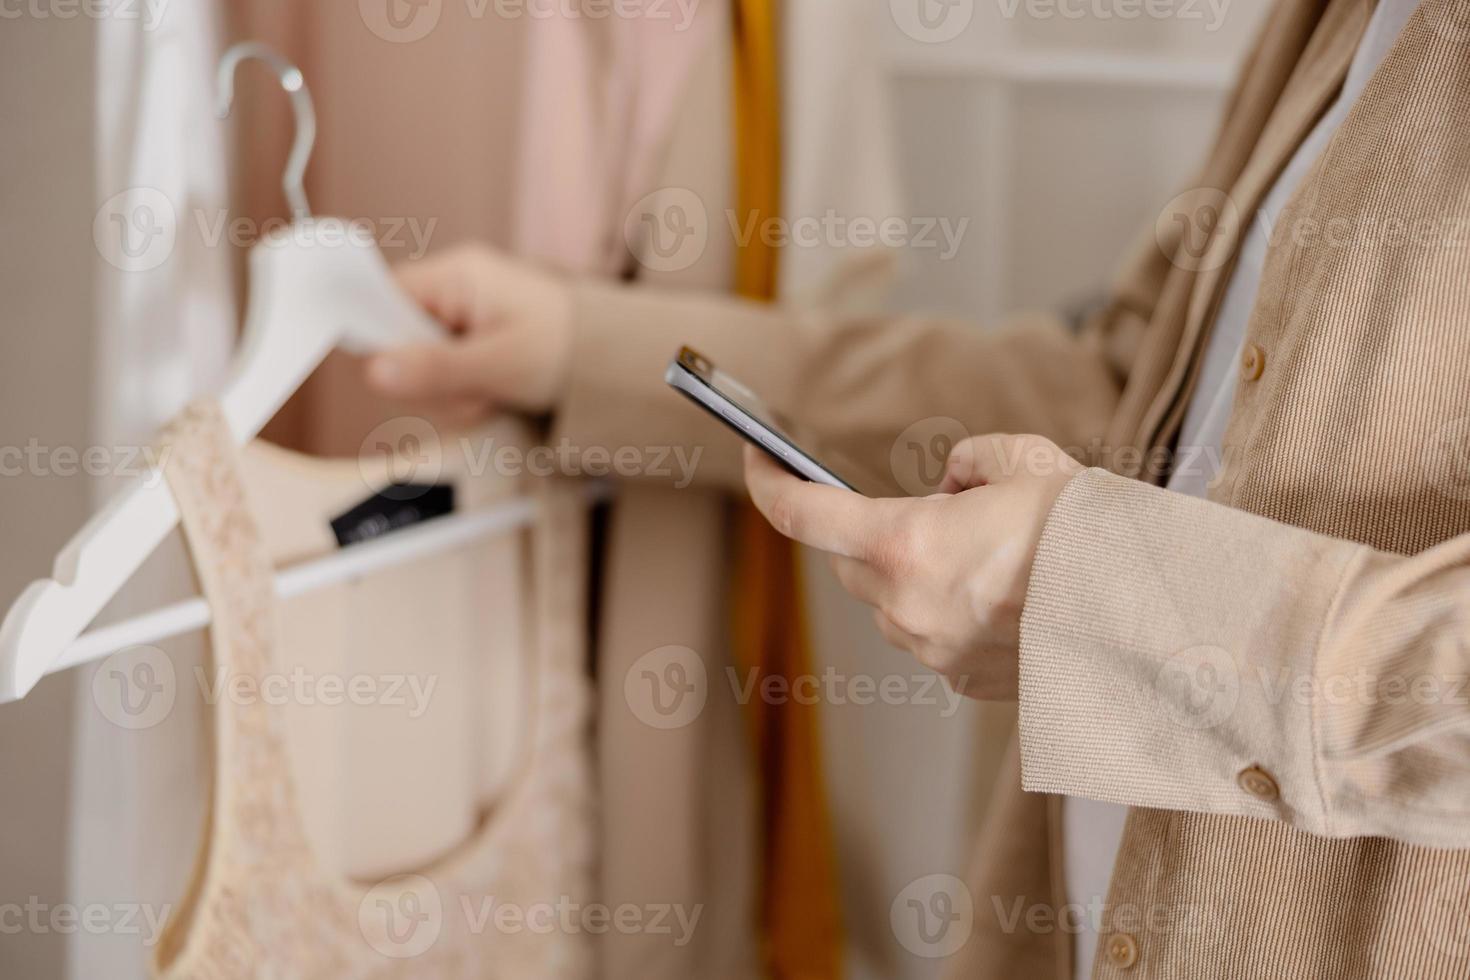 vrouw Holding smartphone en nemen foto van haar oud kleren naar verkopen hen online. verkoop Aan website, e-commerce. hergebruik, tweedehands concept. bewust klant, duurzame levensstijl. detailopname visie.